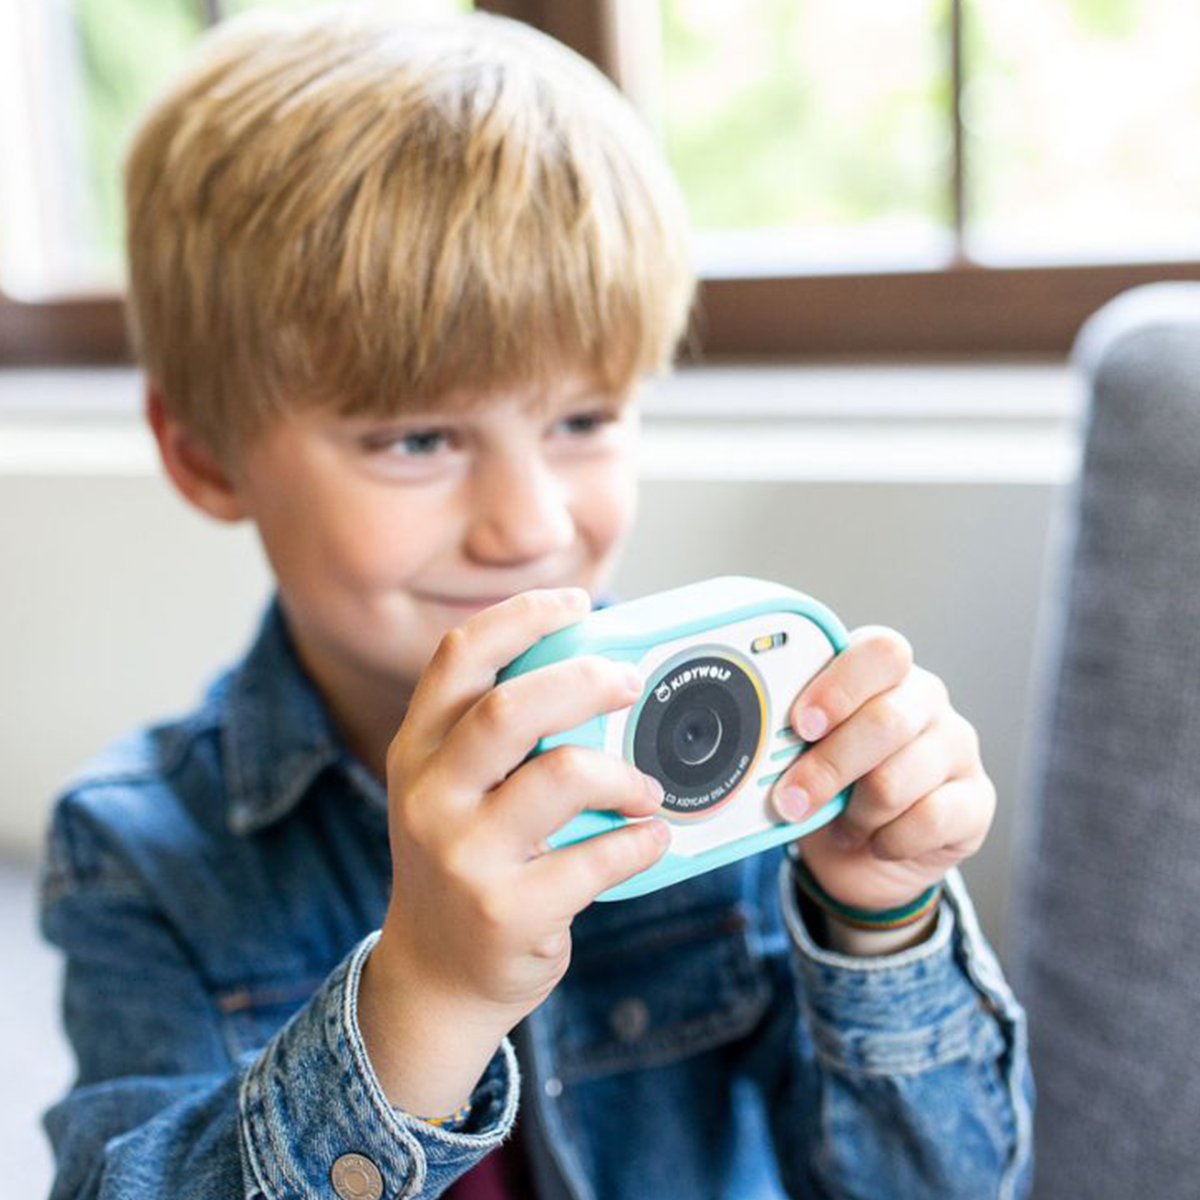 Say Cheese! Met deze superleuke kidycam action camera van Kidywolf in blue kan je kindje al zijn of haar favoriete momenten vastleggen! De camera is speciaal ontworpen om een optimale grip mogelijk te maken. VanZus